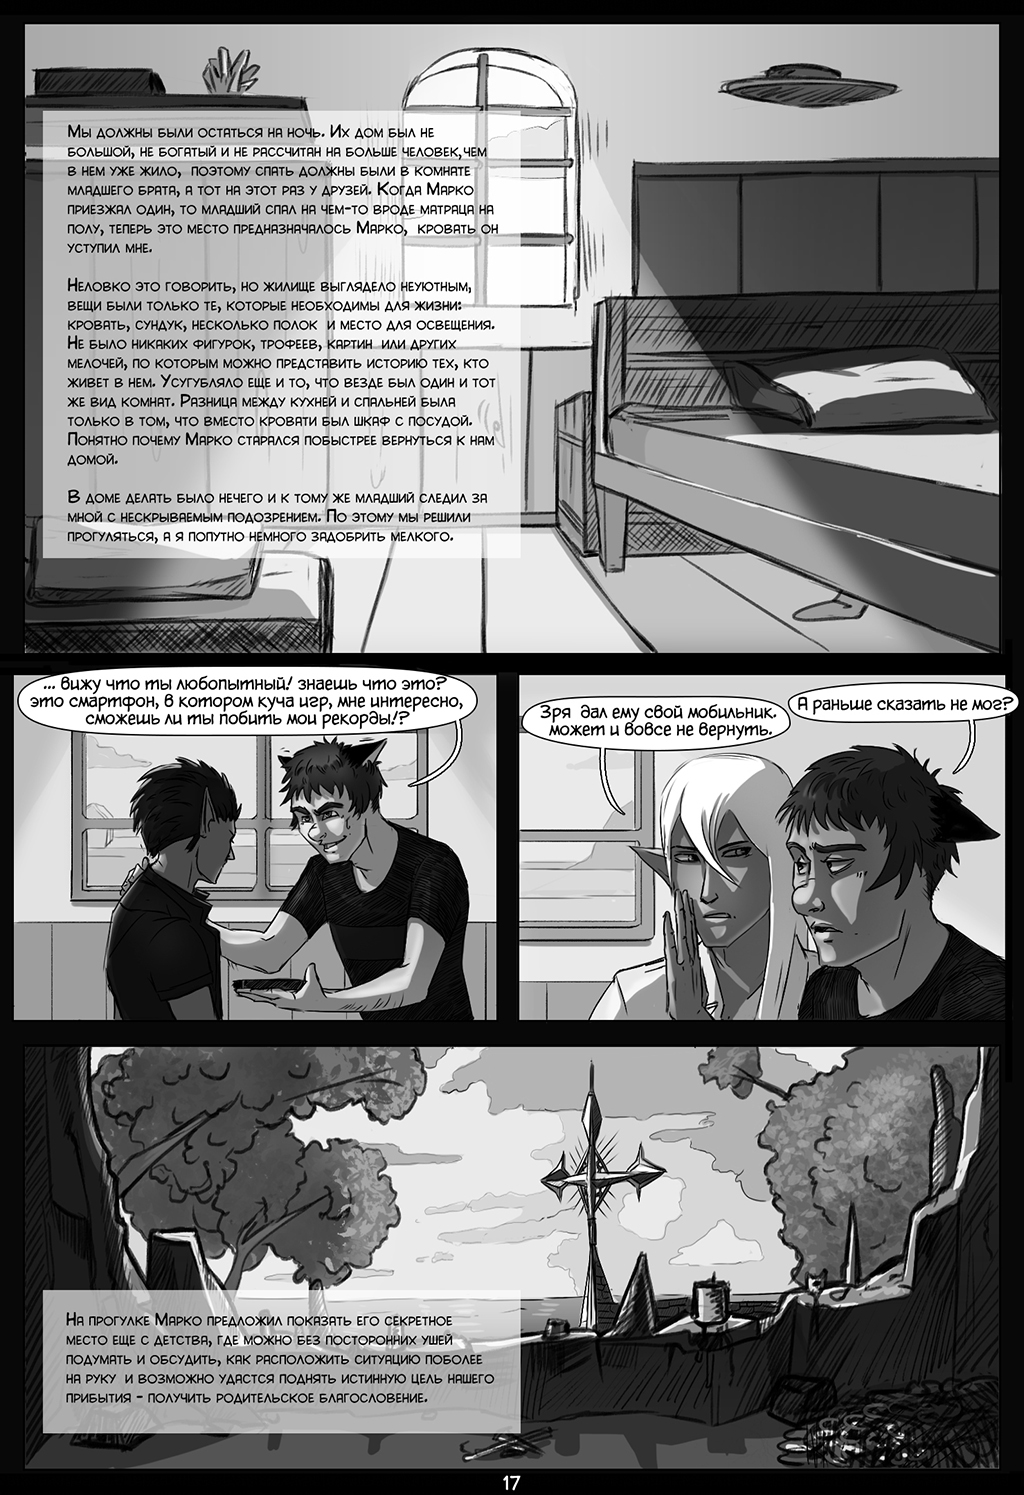 Комикс "Кристофер и Марко" - Чужая стая: выпуск №19